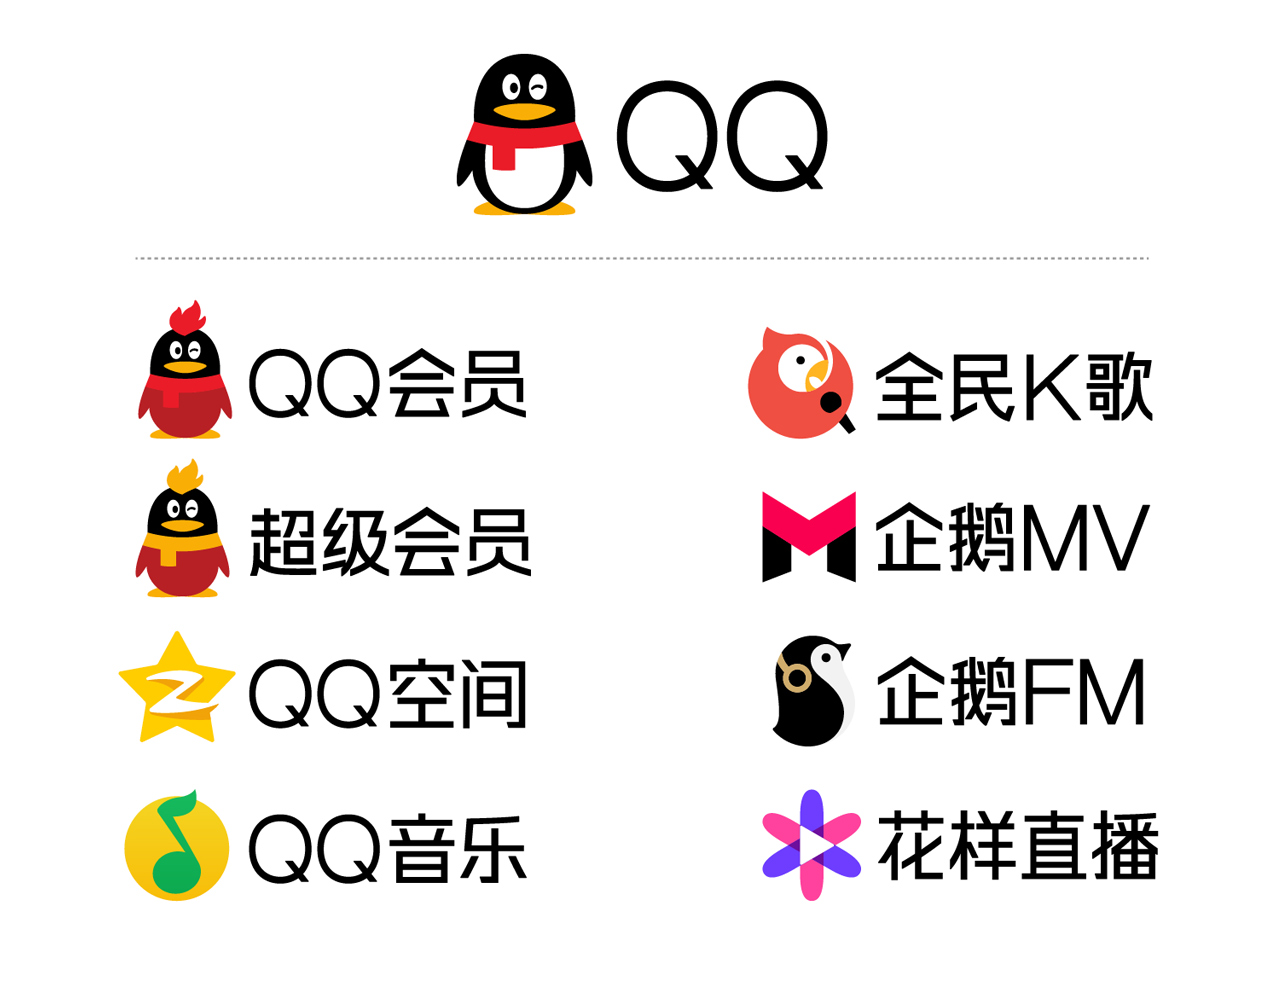 【1999-2016】qq品牌蜕变,我们的青春里都有一只叫qq的企鹅